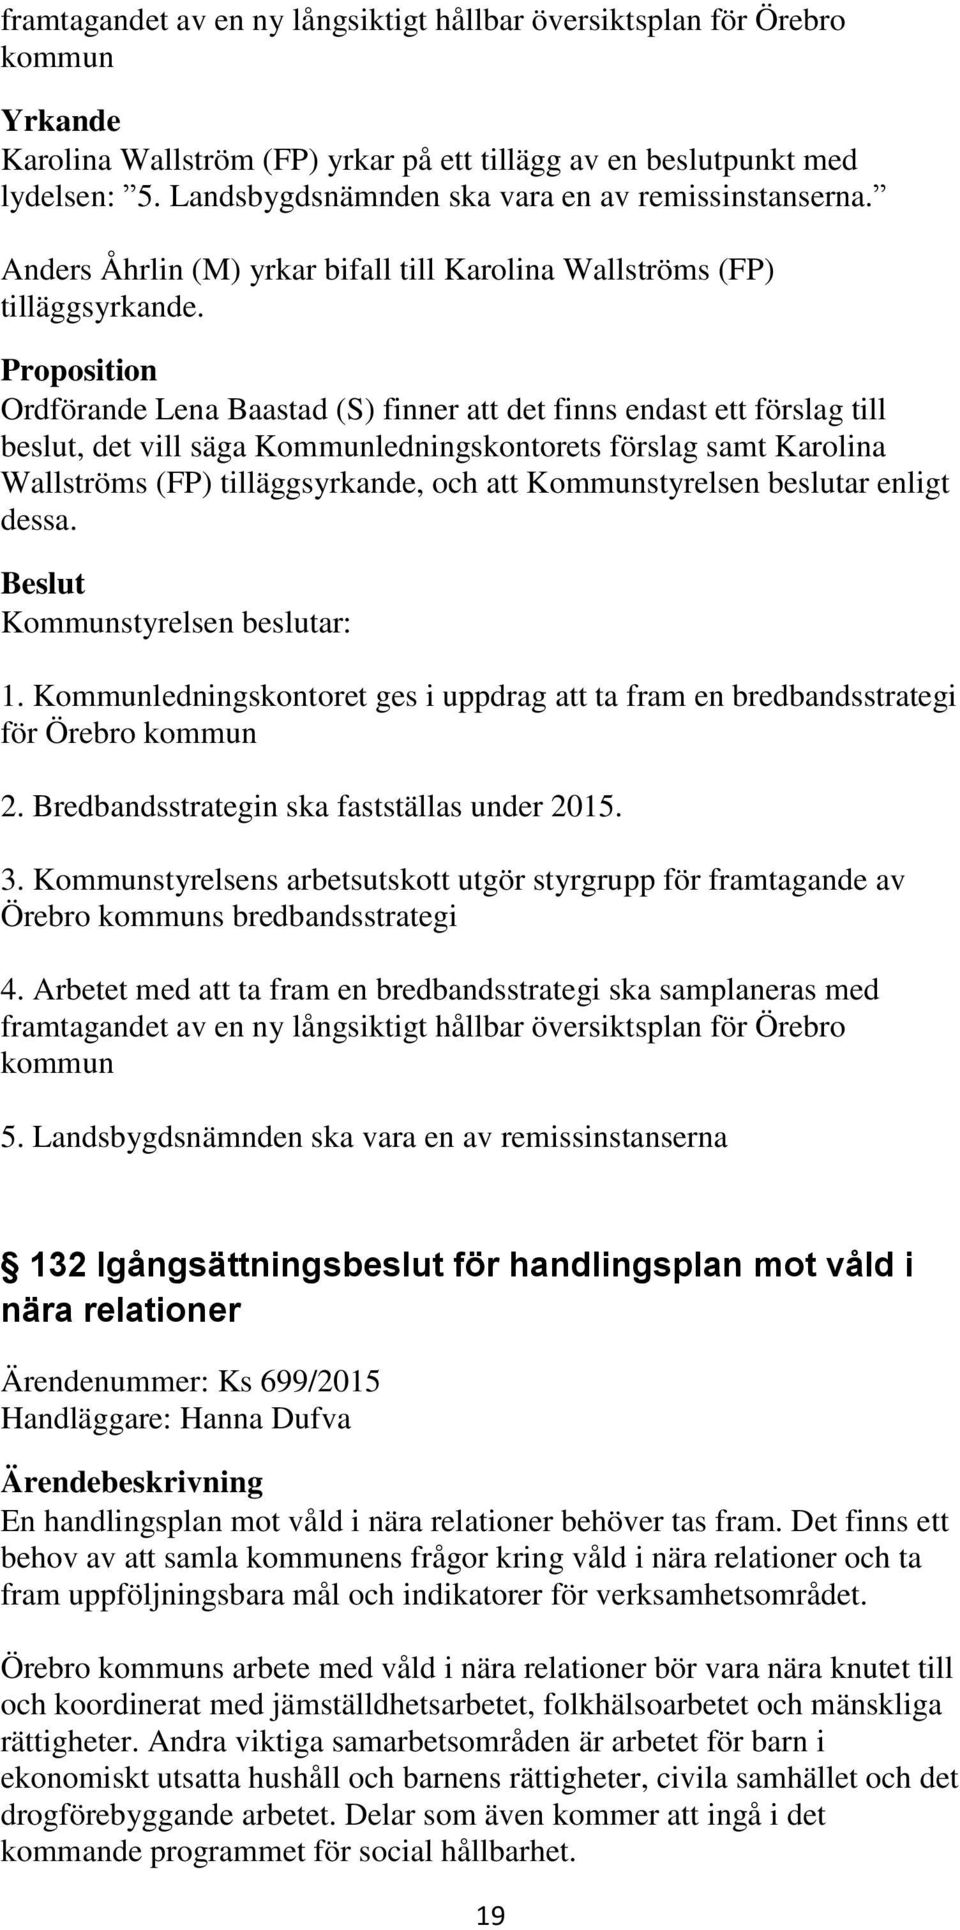 Proposition Ordförande Lena Baastad (S) finner att det finns endast ett förslag till beslut, det vill säga Kommunledningskontorets förslag samt Karolina Wallströms (FP) tilläggsyrkande, och att